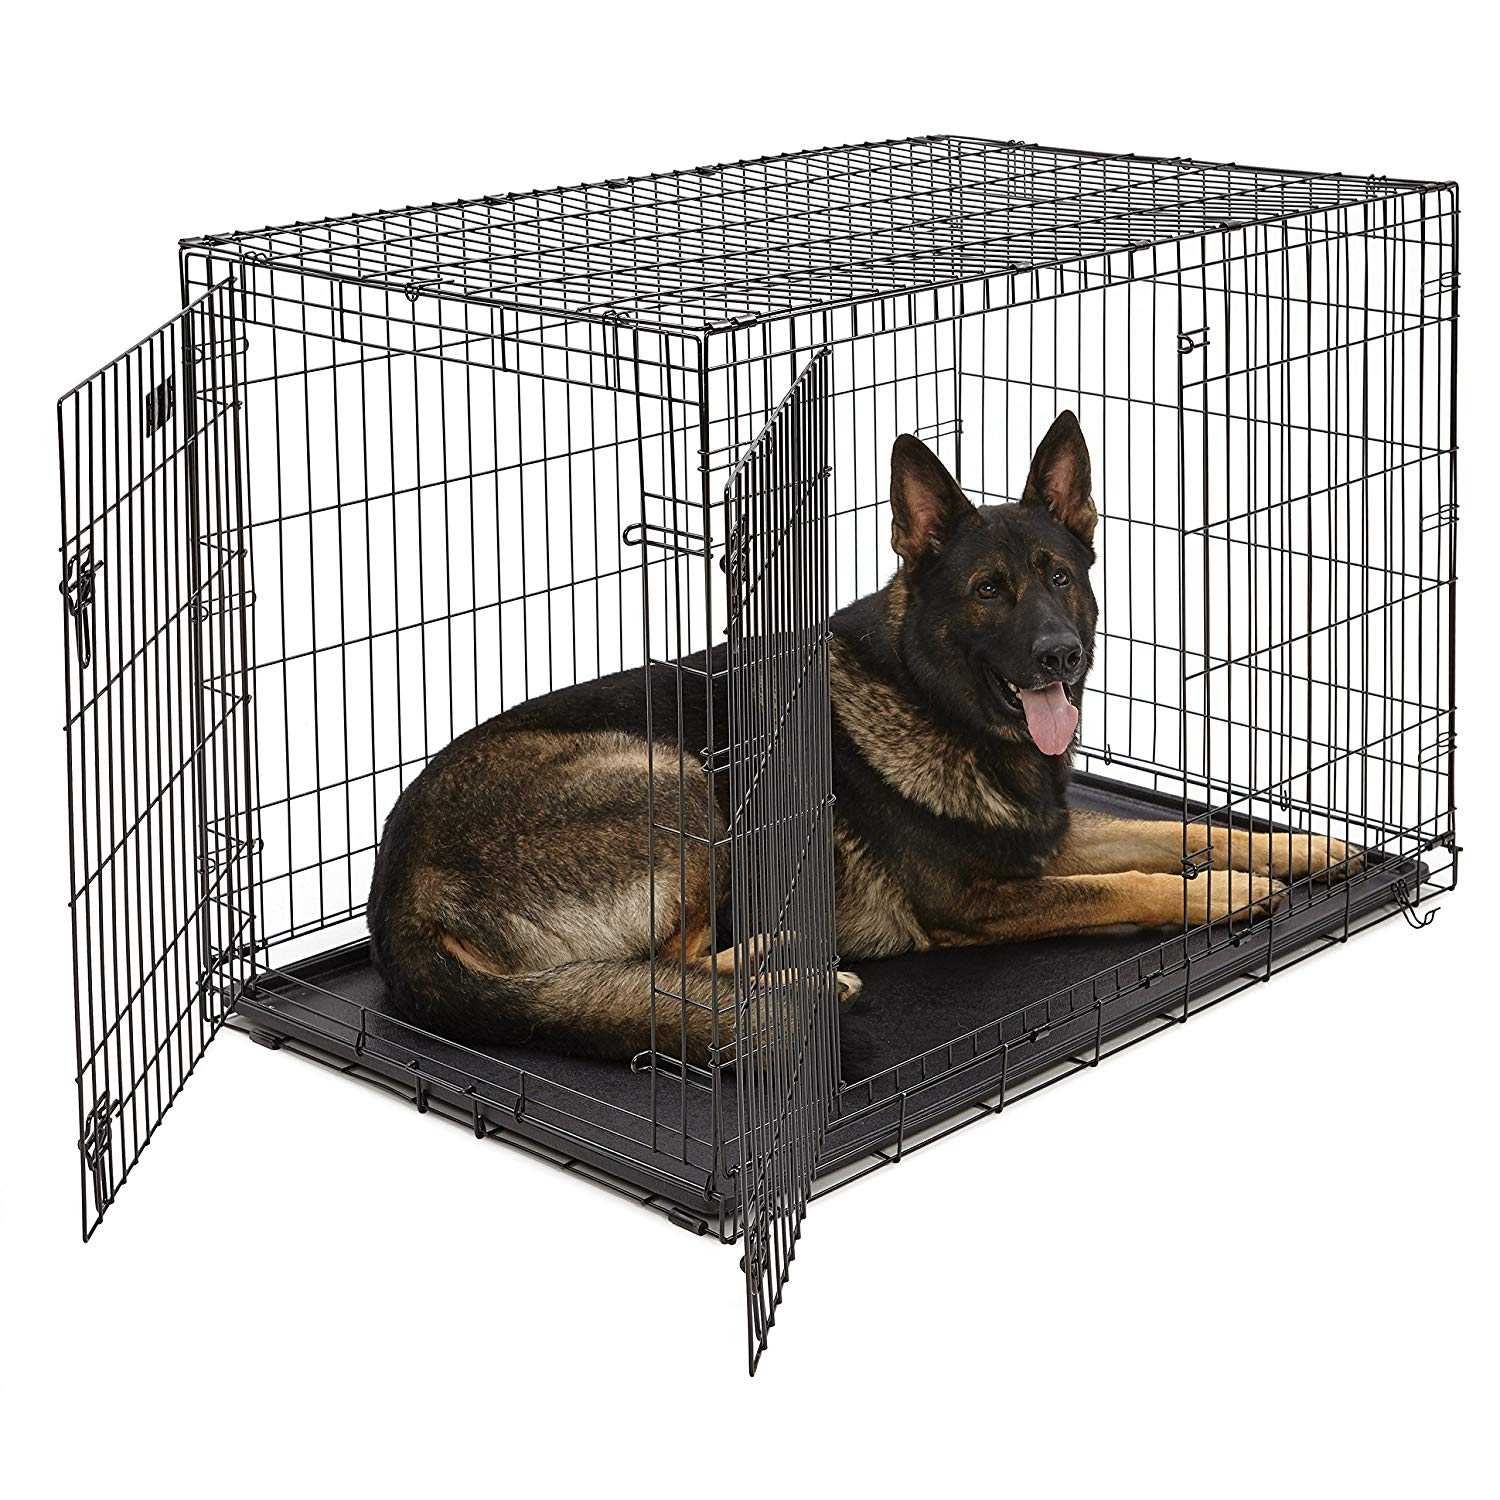 NOVO - Dog Crate, Jaula Transportadora Metálica Dobrável